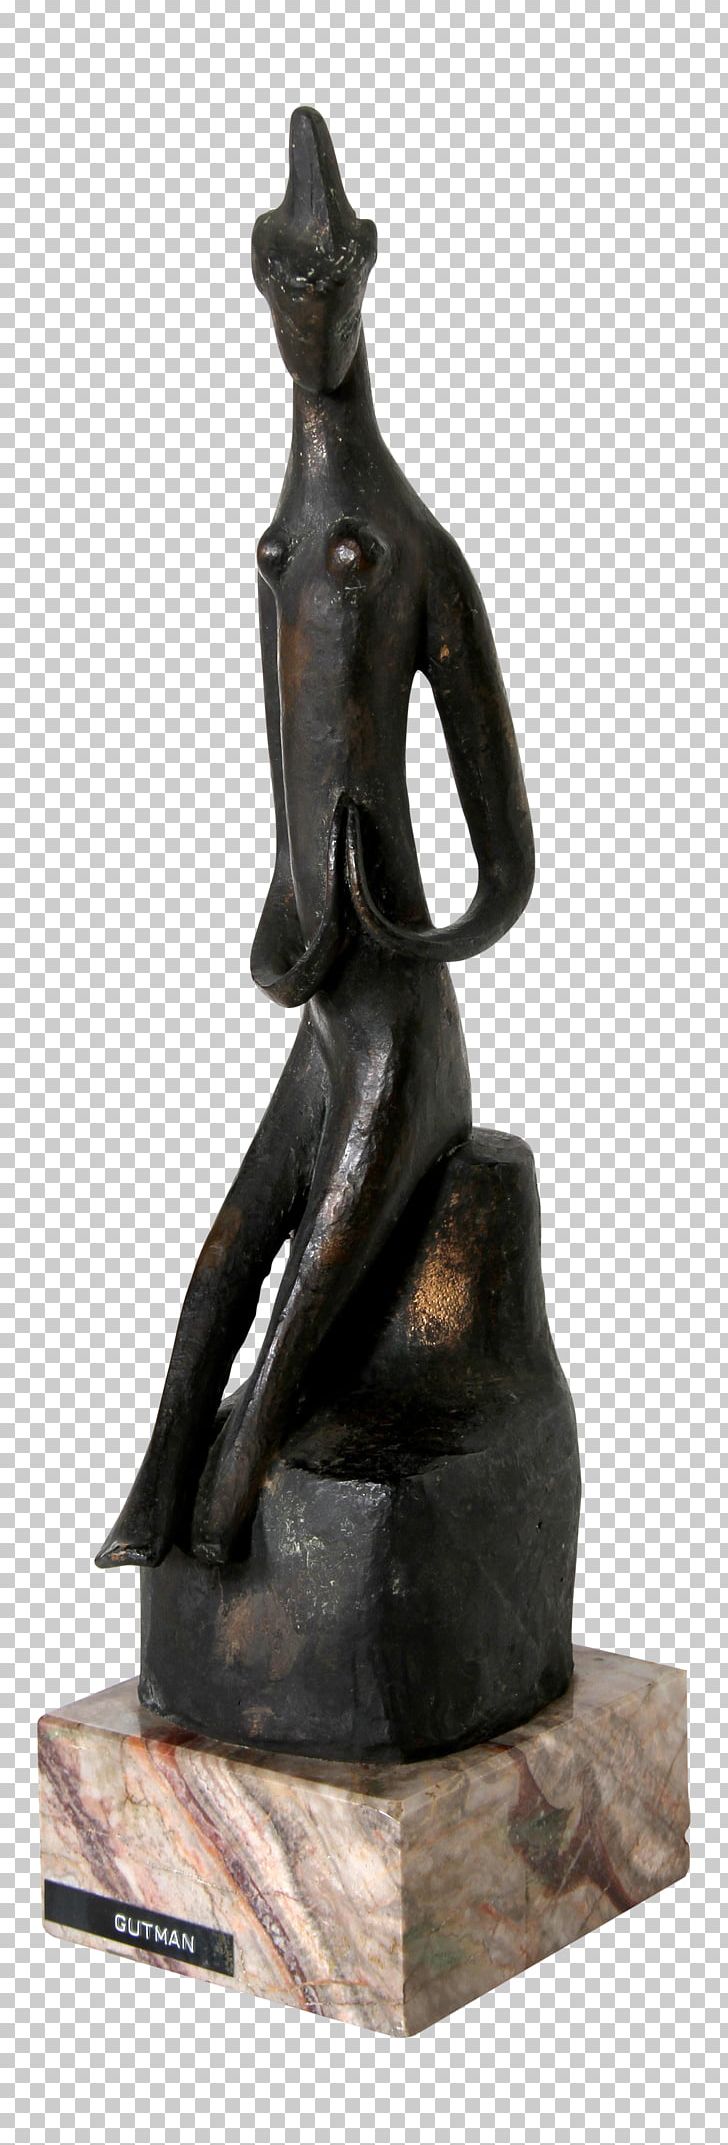 Modern Sculpture Bronze Sculpture Statue Chairish PNG, Clipart, Art, Bronze, Bronze Sculpture, Chairish, Classical Sculpture Free PNG Download